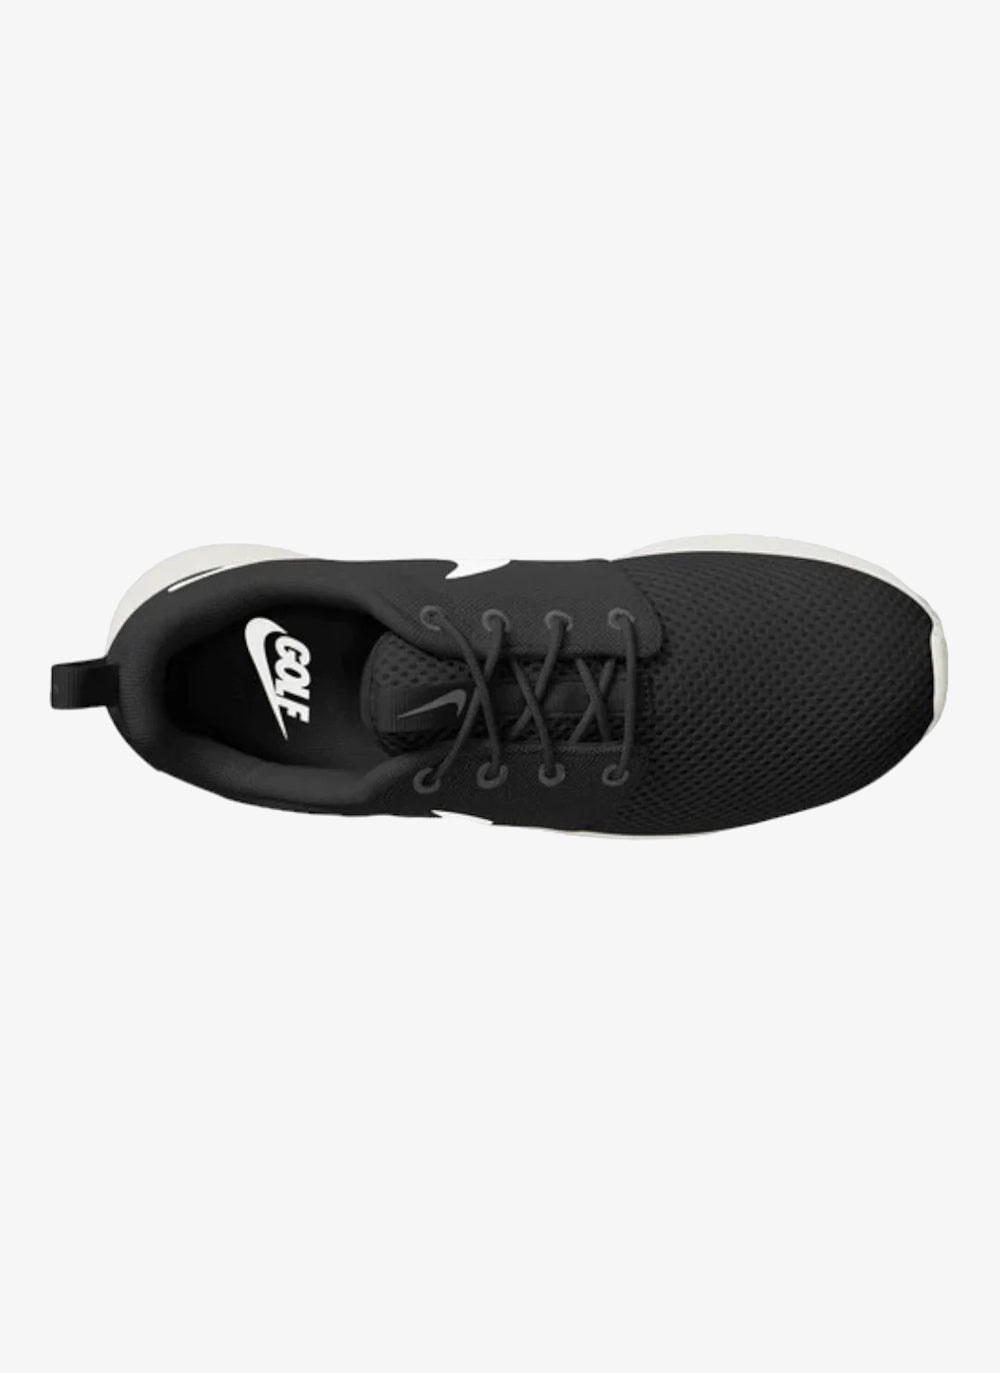 Junior Nike Roshe G Golf Shoes DZ6895